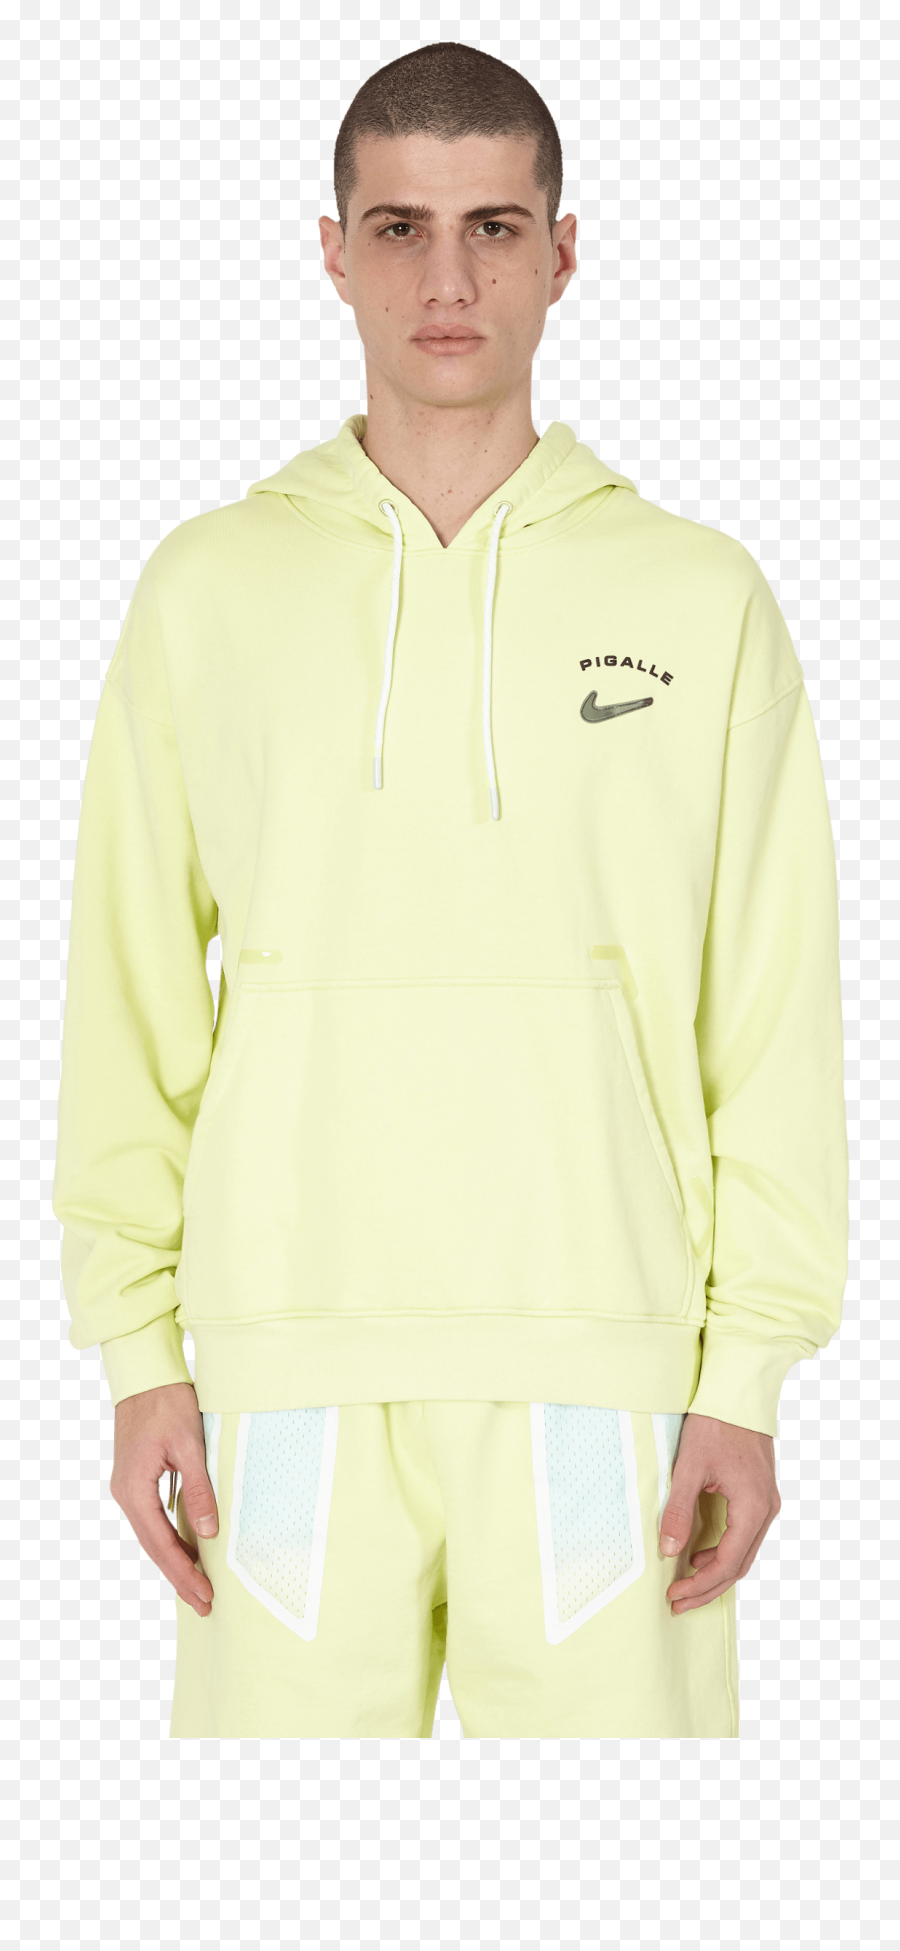 Nike Smiley Face Hoodie Shop Clothing U0026 Shoes Online Emoji,Happy Faces Emoticon Sweatshirt